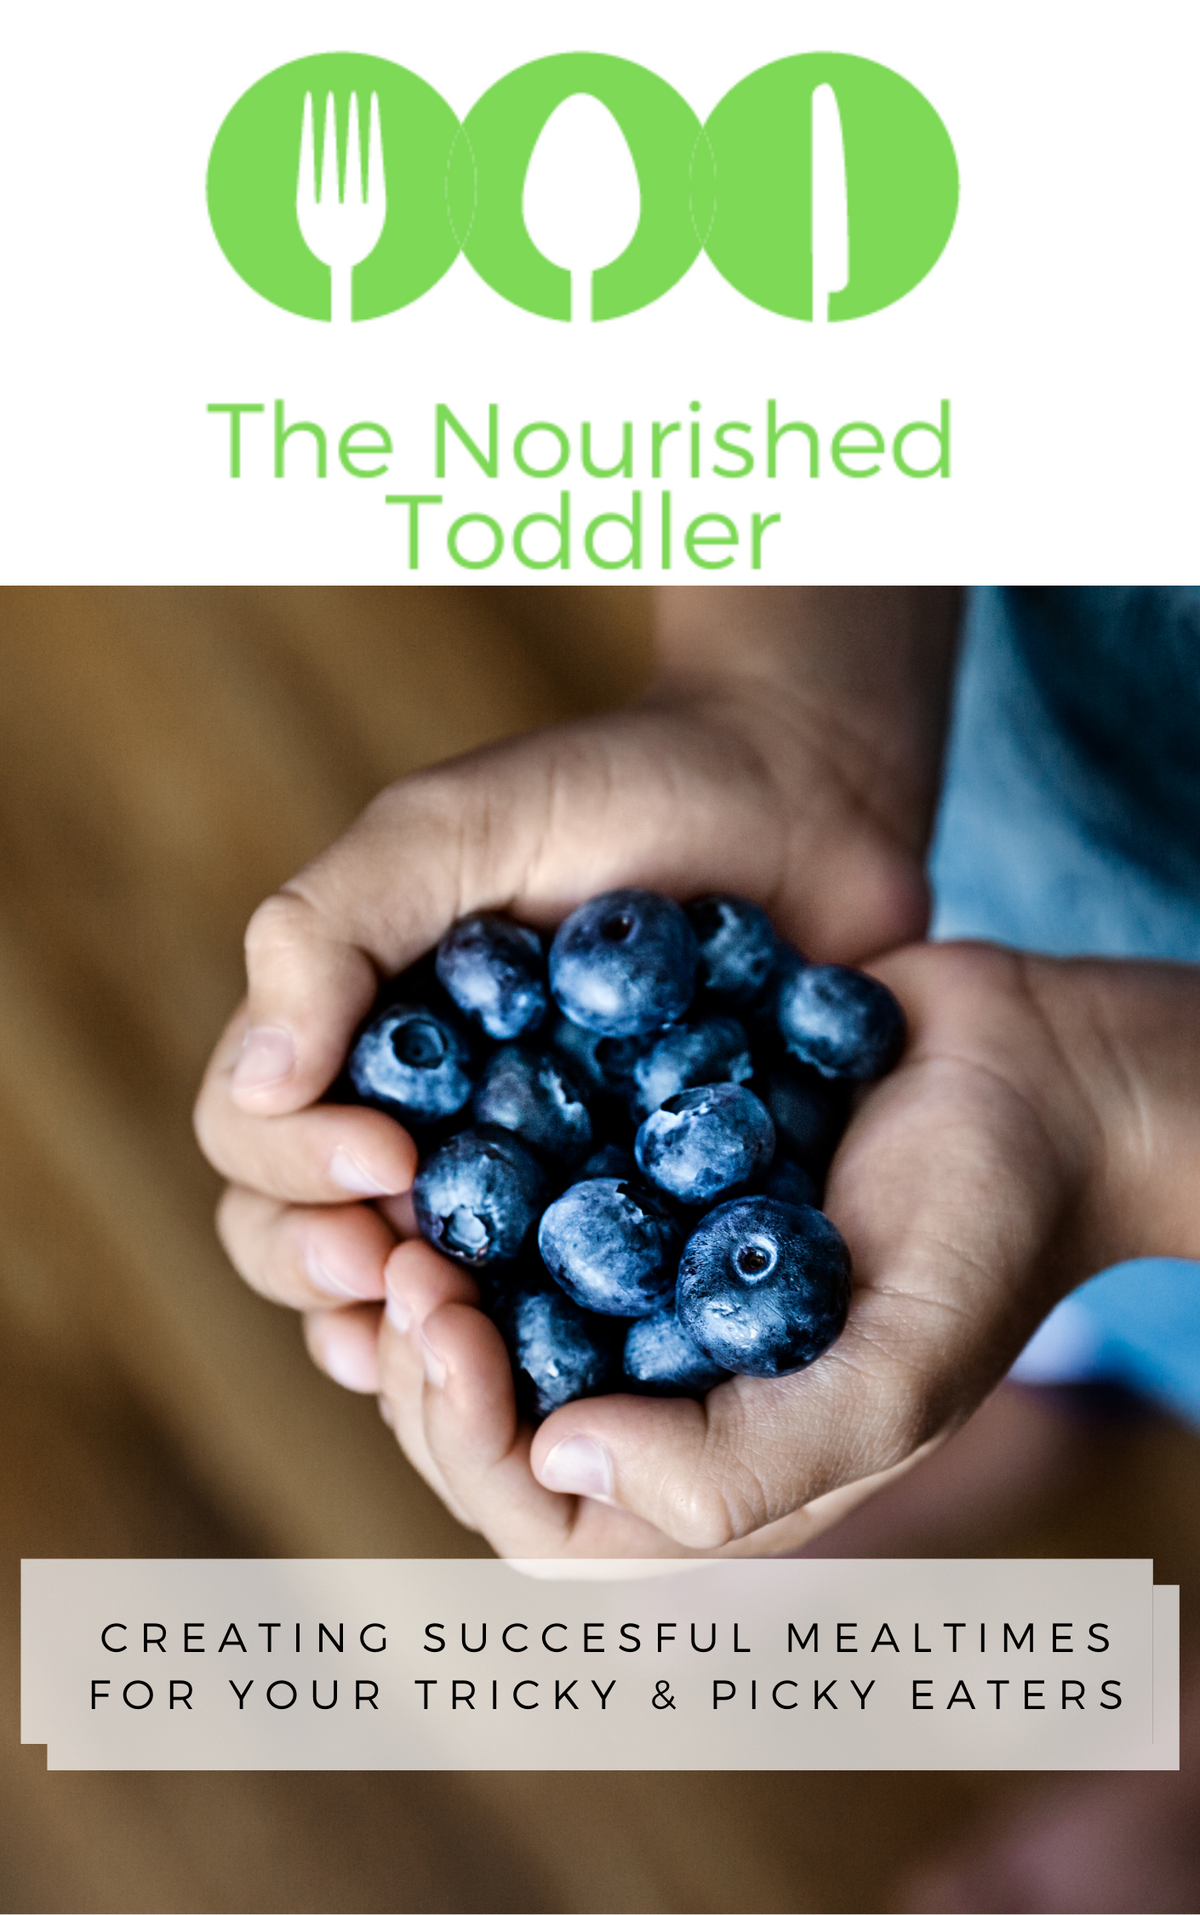 The Nourished Toddler Program